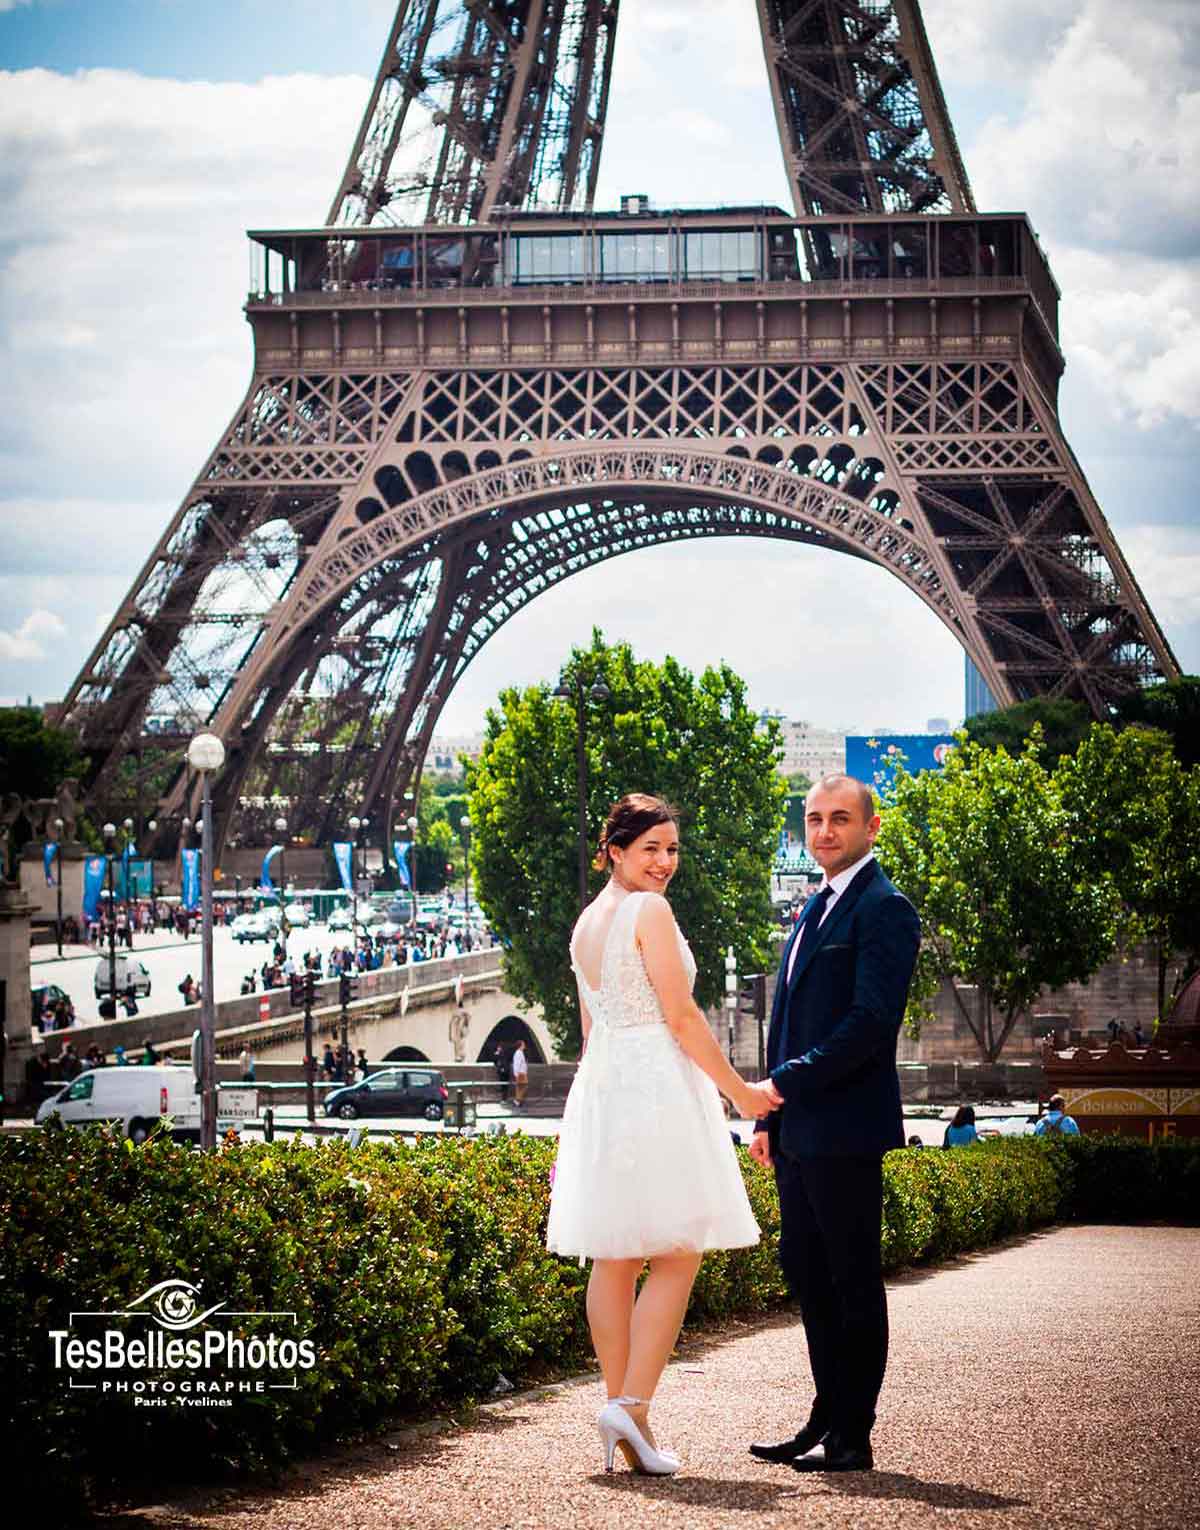 Séance couple photo de mariage à Paris, shooting couple mariage lifestyle Paris, photographe mariage Paris